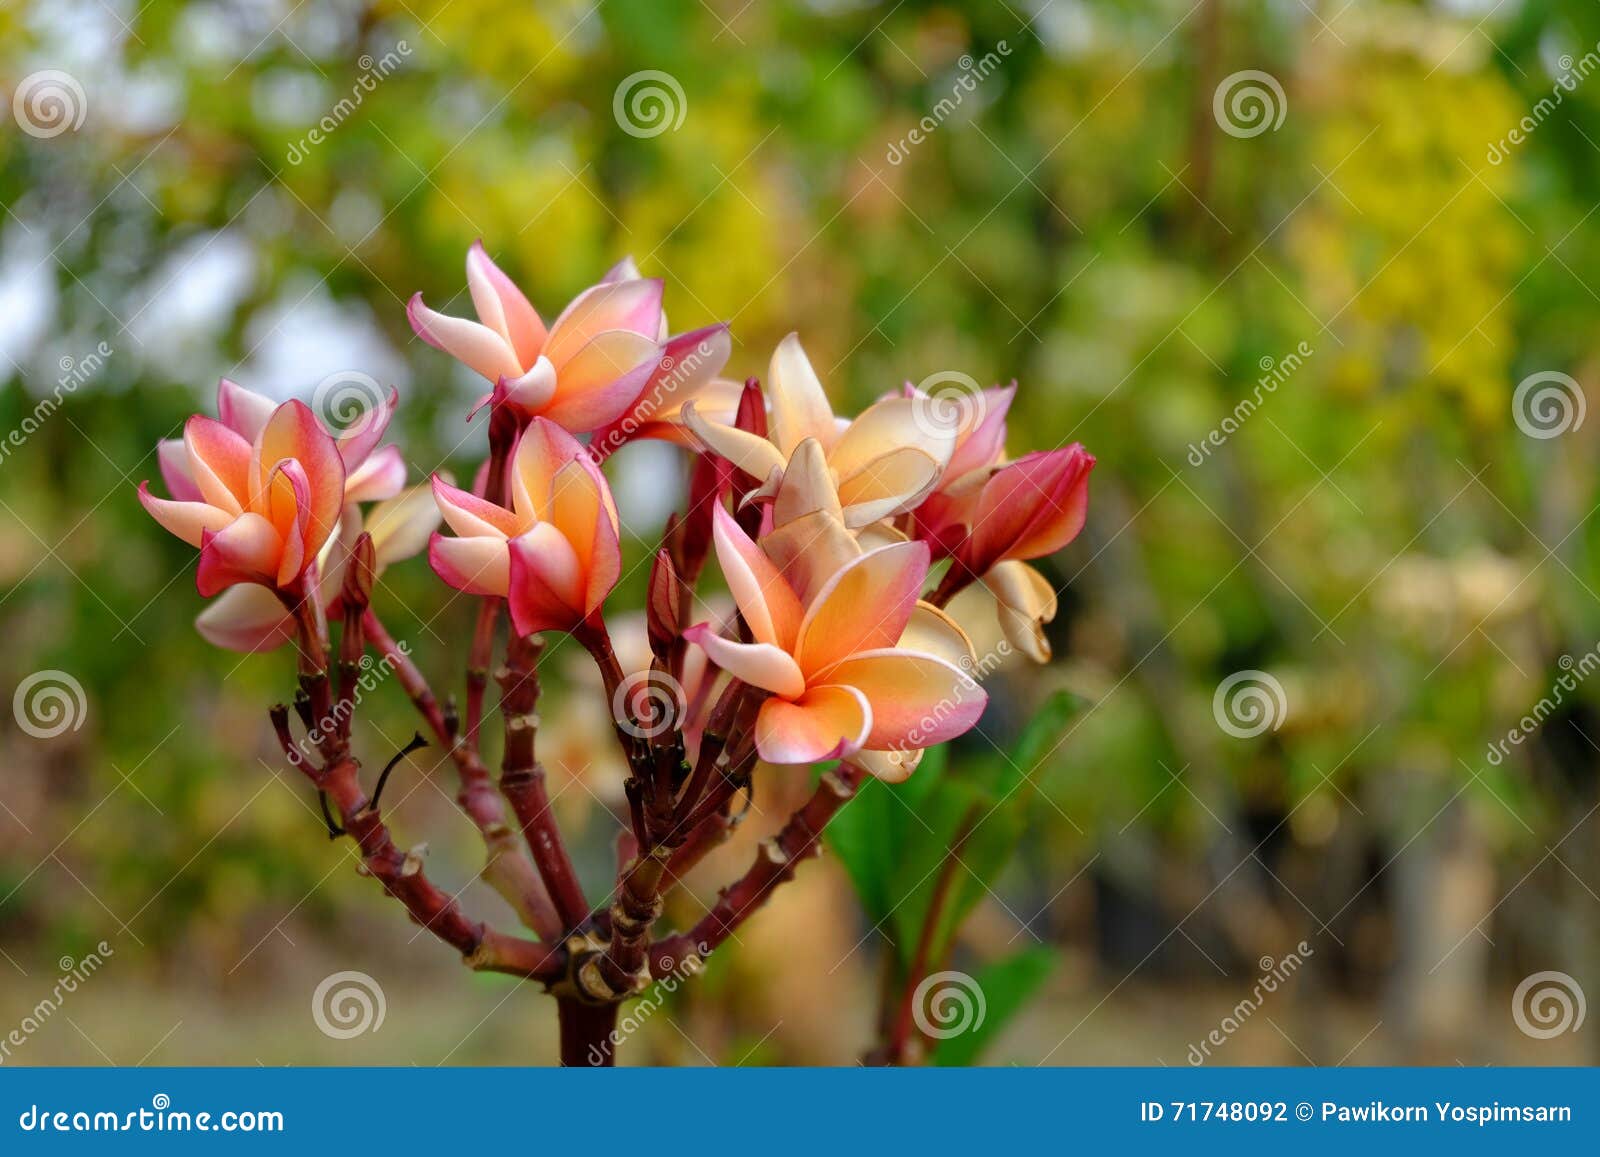 Plumeriabloemen Met Mooie Kleuren Stock Foto - Image of bloem, beeld ...